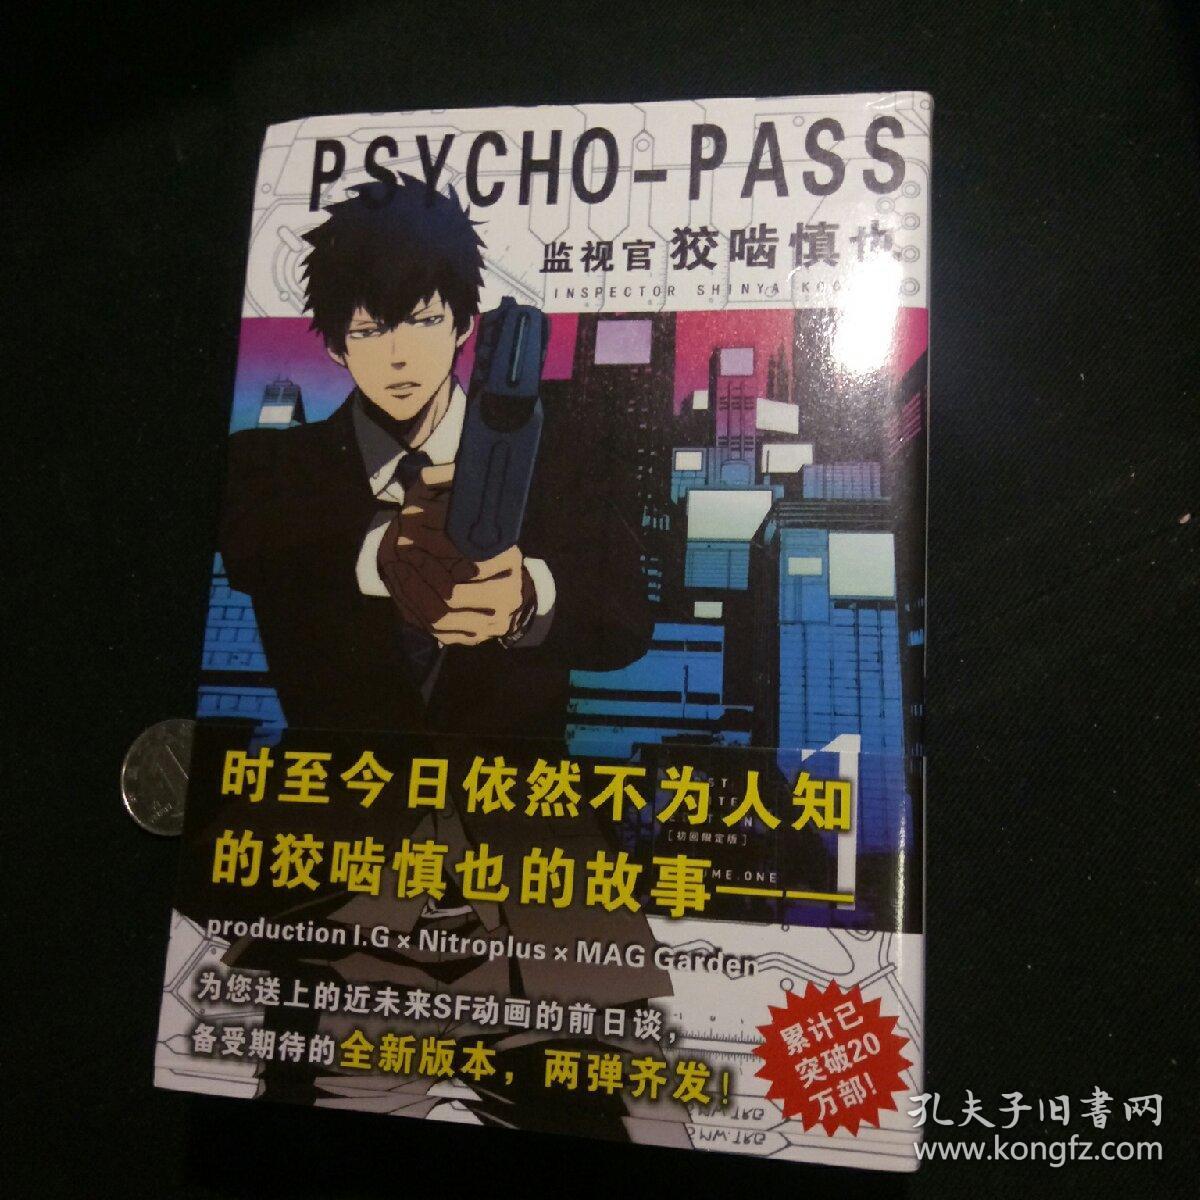 Psycho Pass 监视官狡噛慎也 孔夫子旧书网